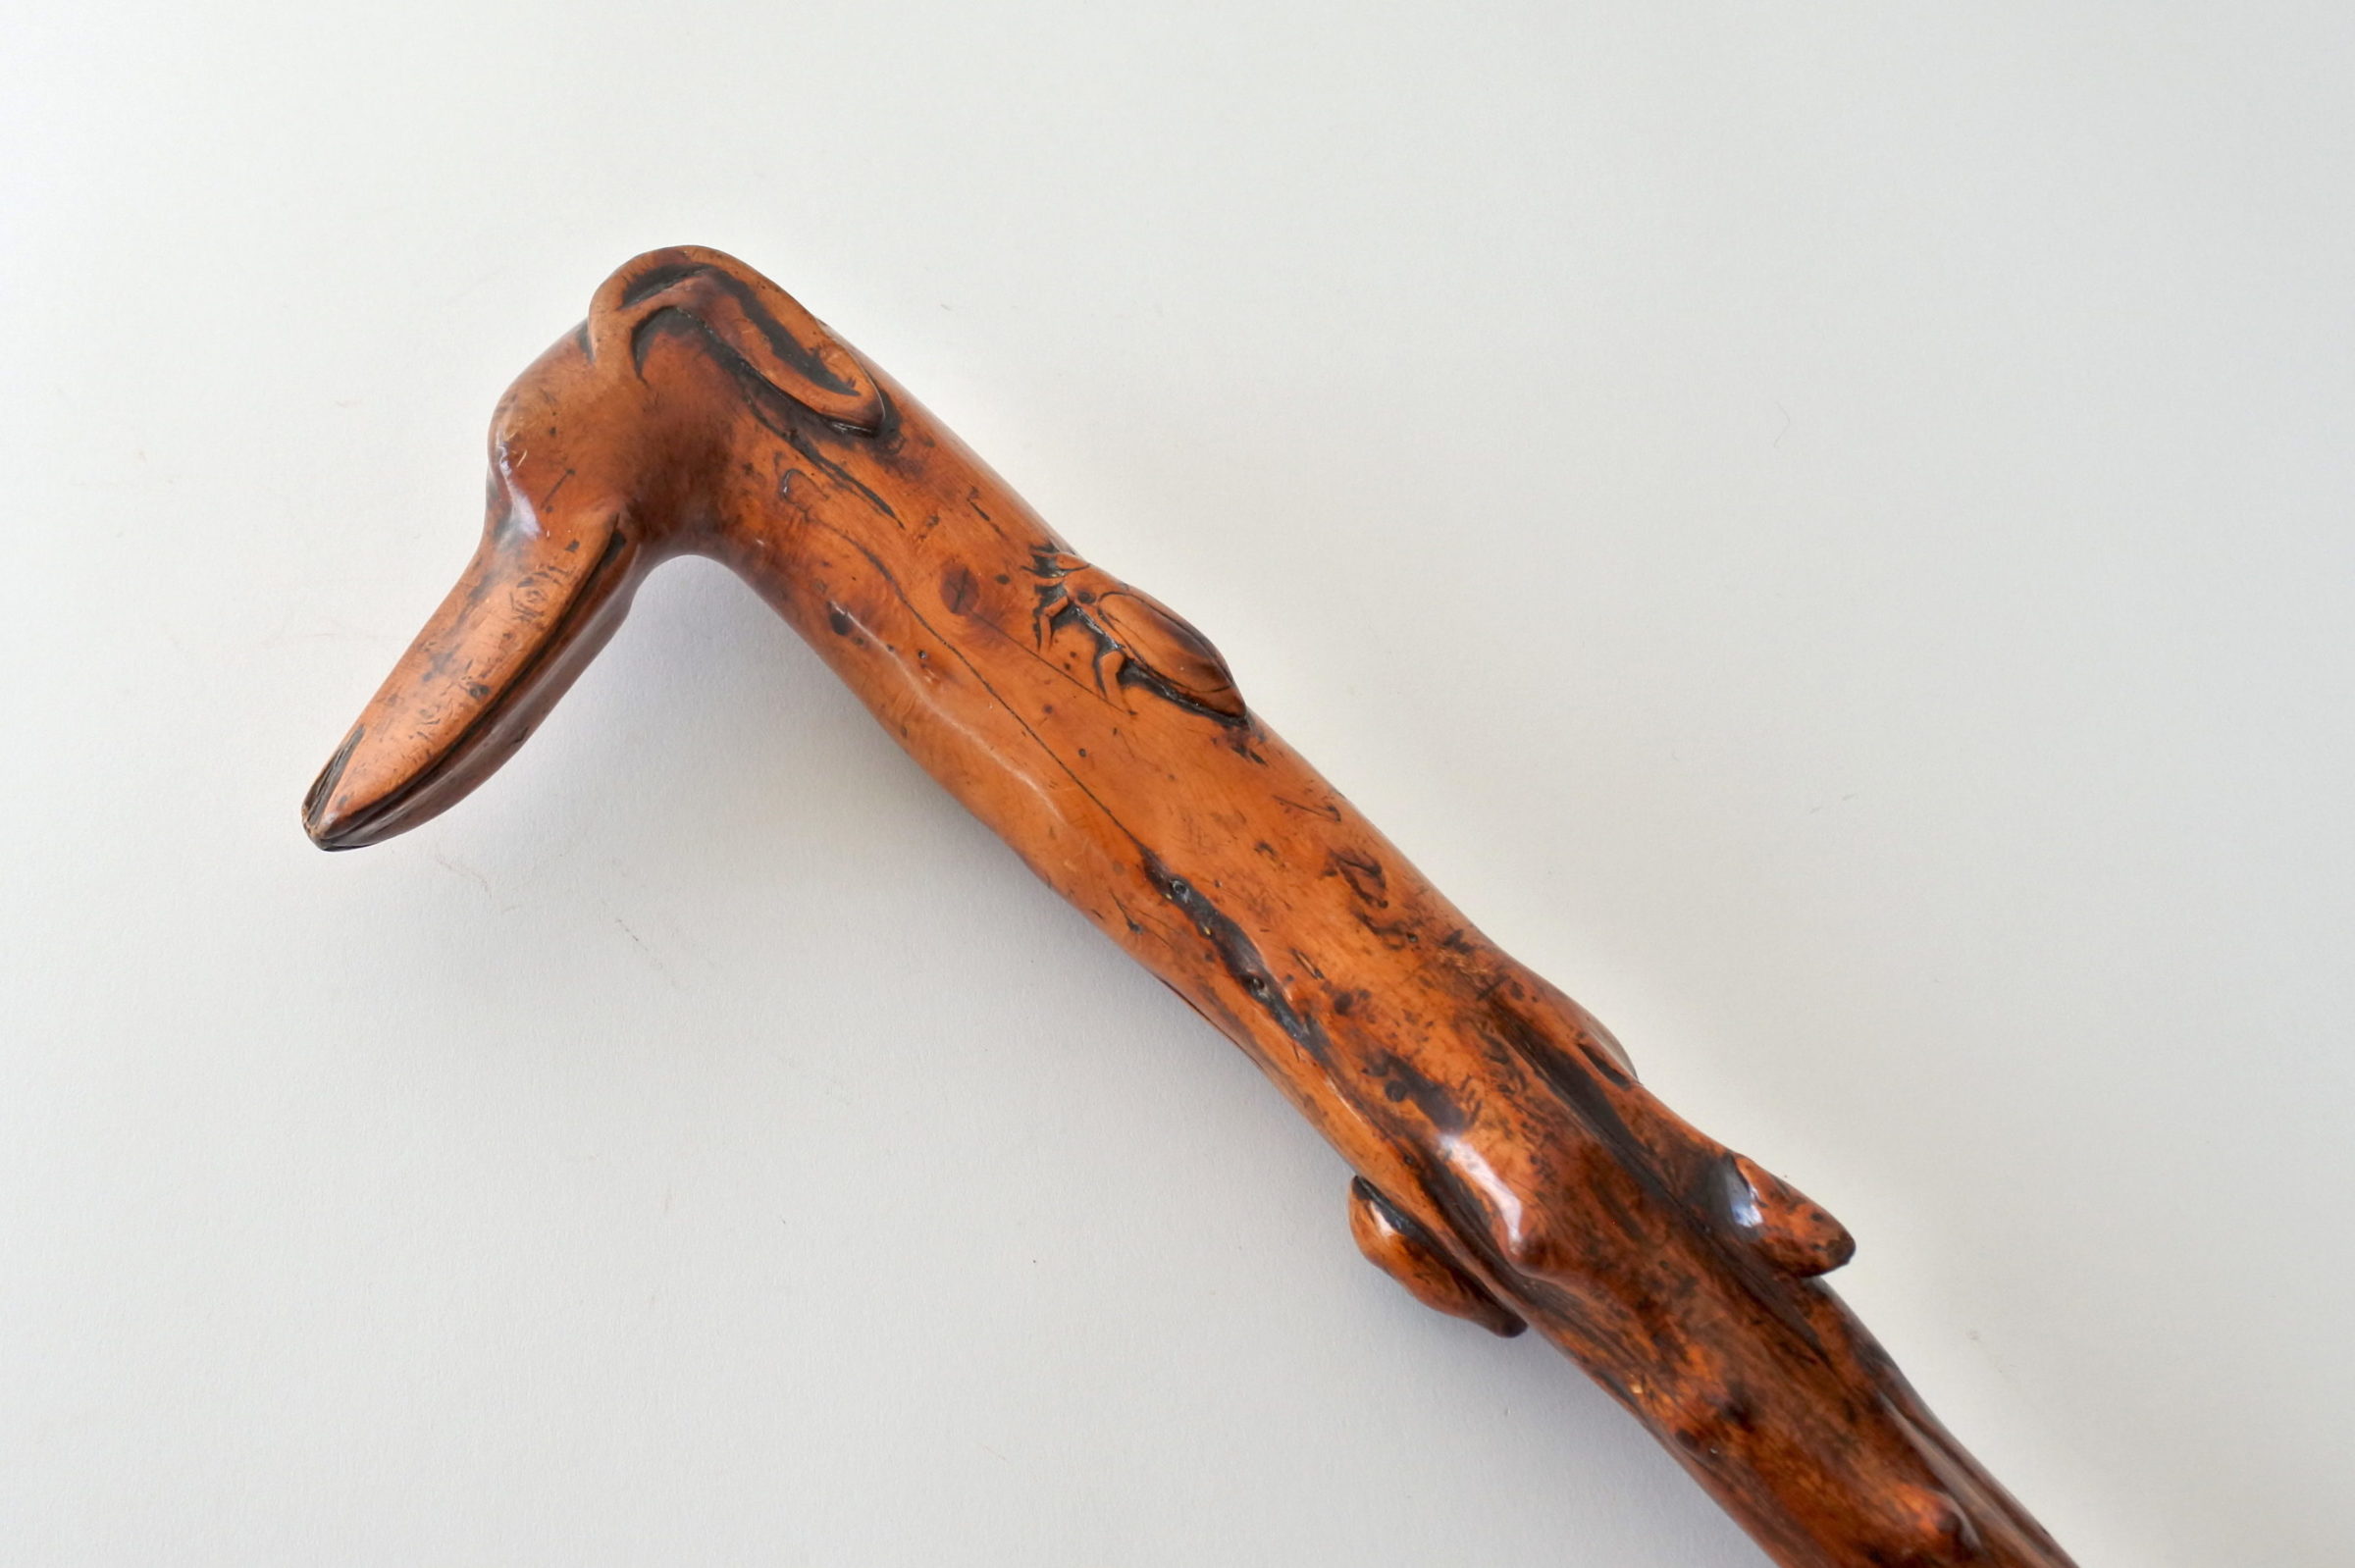 Bastone monossilo in legno scolpito con impugnatura a forma di testa di cane - 2